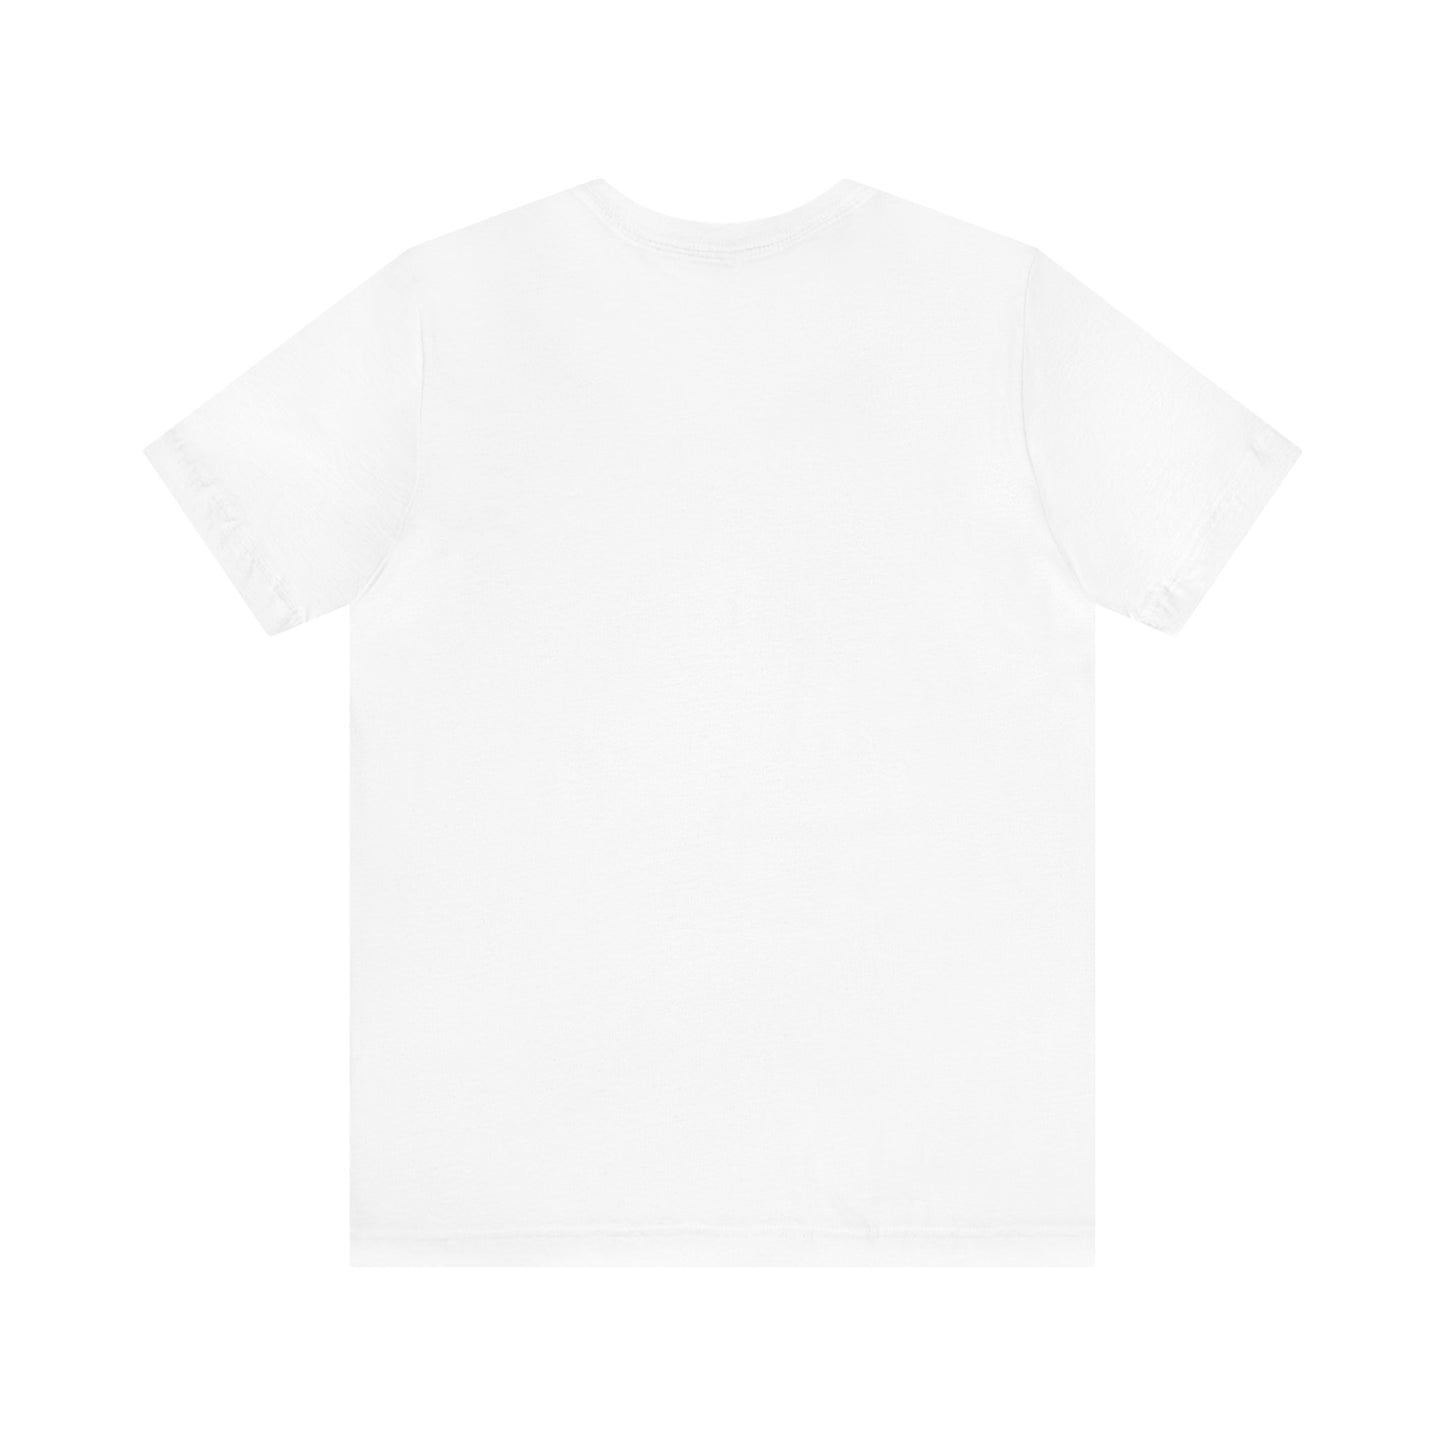 Edmonds Husky T-shirt